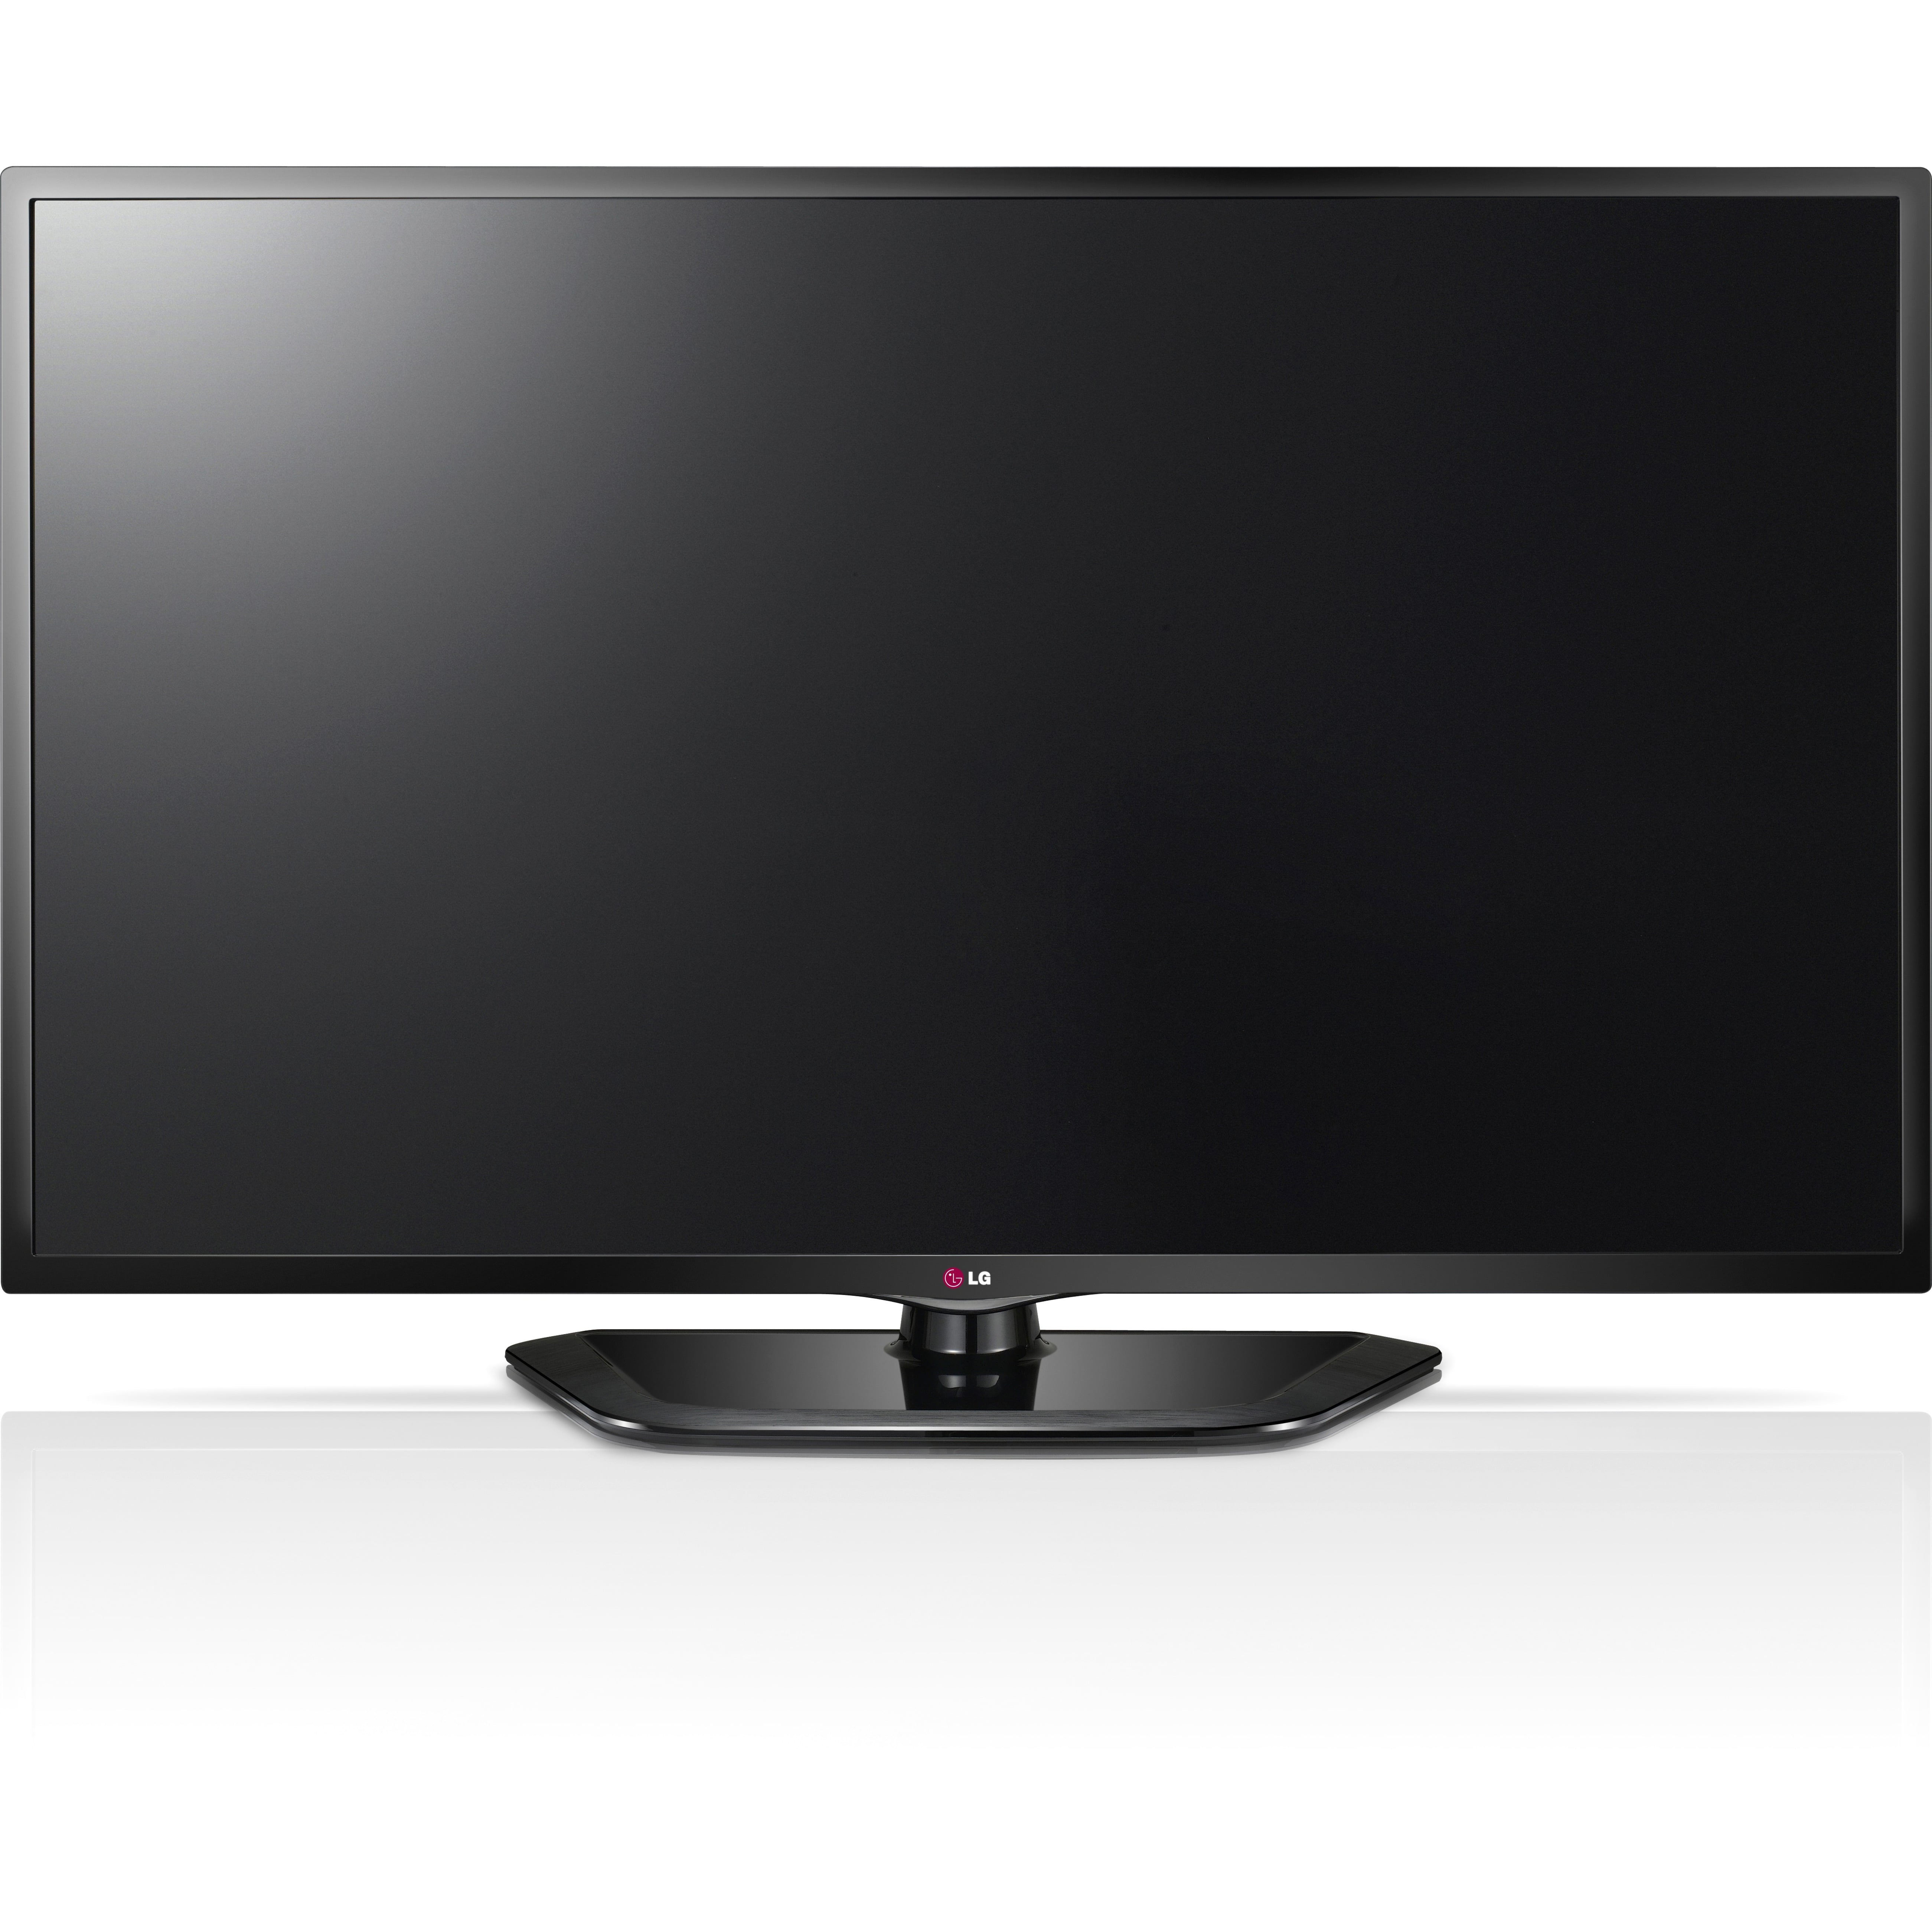 Телевизоры lg 32 отзывы. LG 47ld750. Телевизор LG 37lg6000 37". LG Smart TV 42 дюйма. Телевизор LG 42lh4900 42".